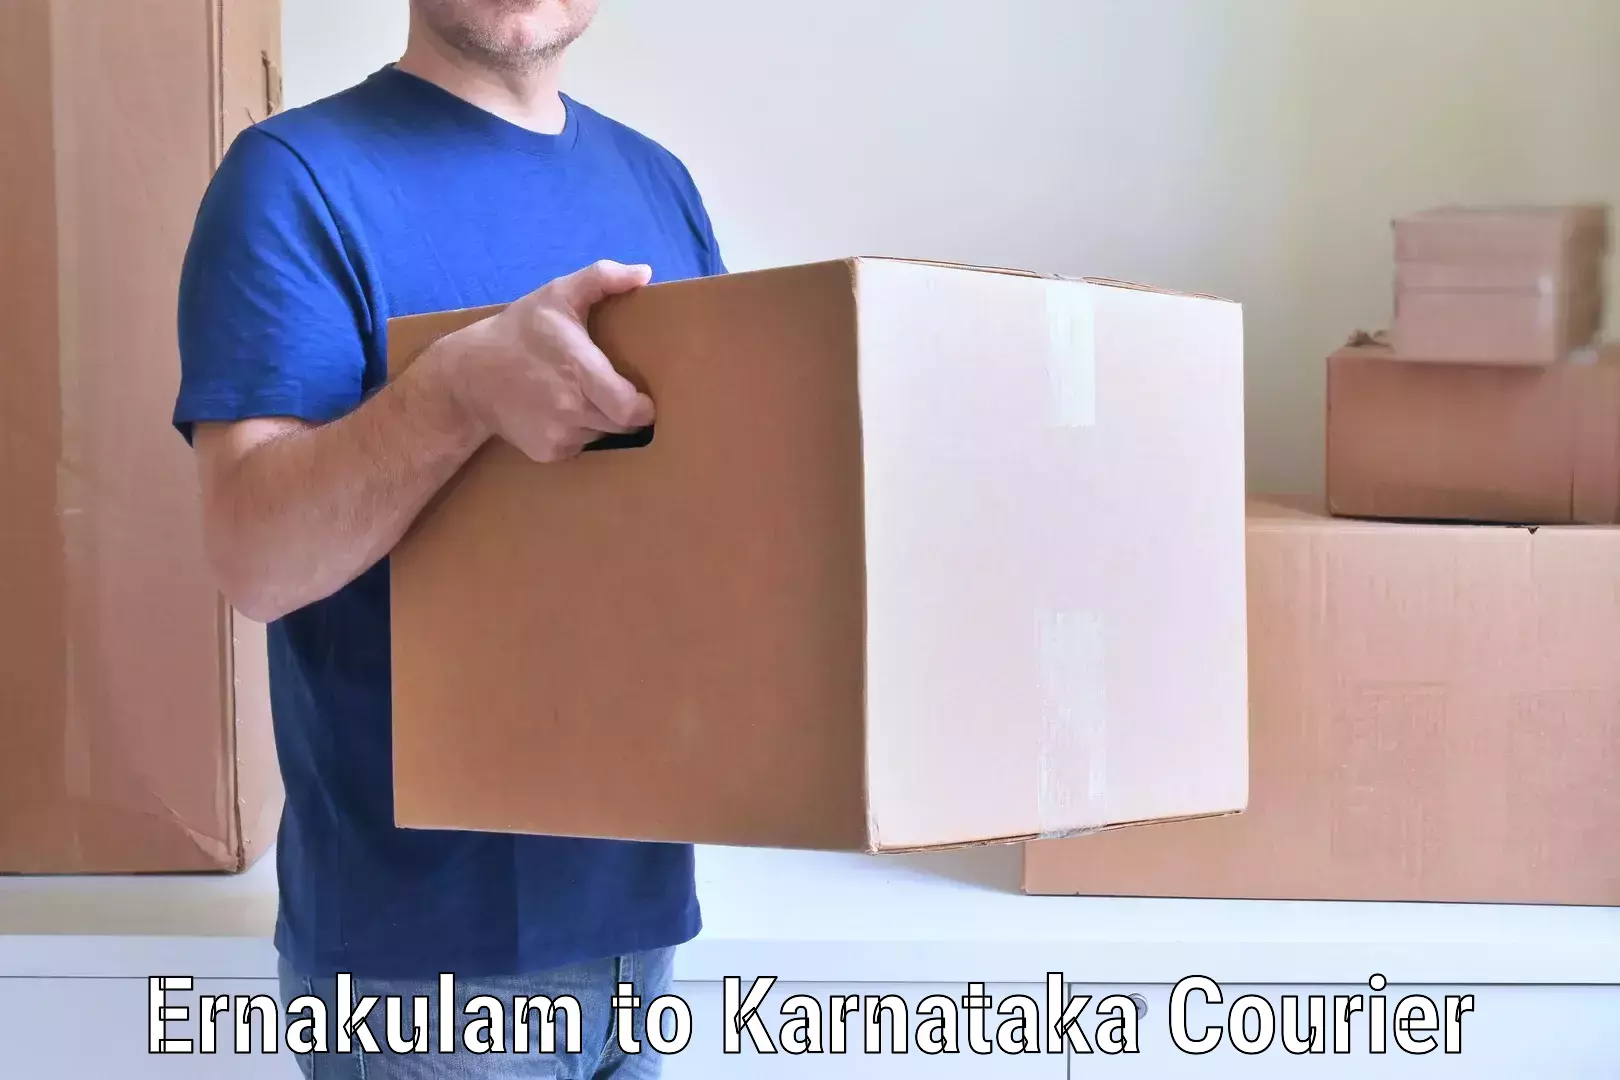 Skilled furniture movers Ernakulam to Chikkanayakanahalli